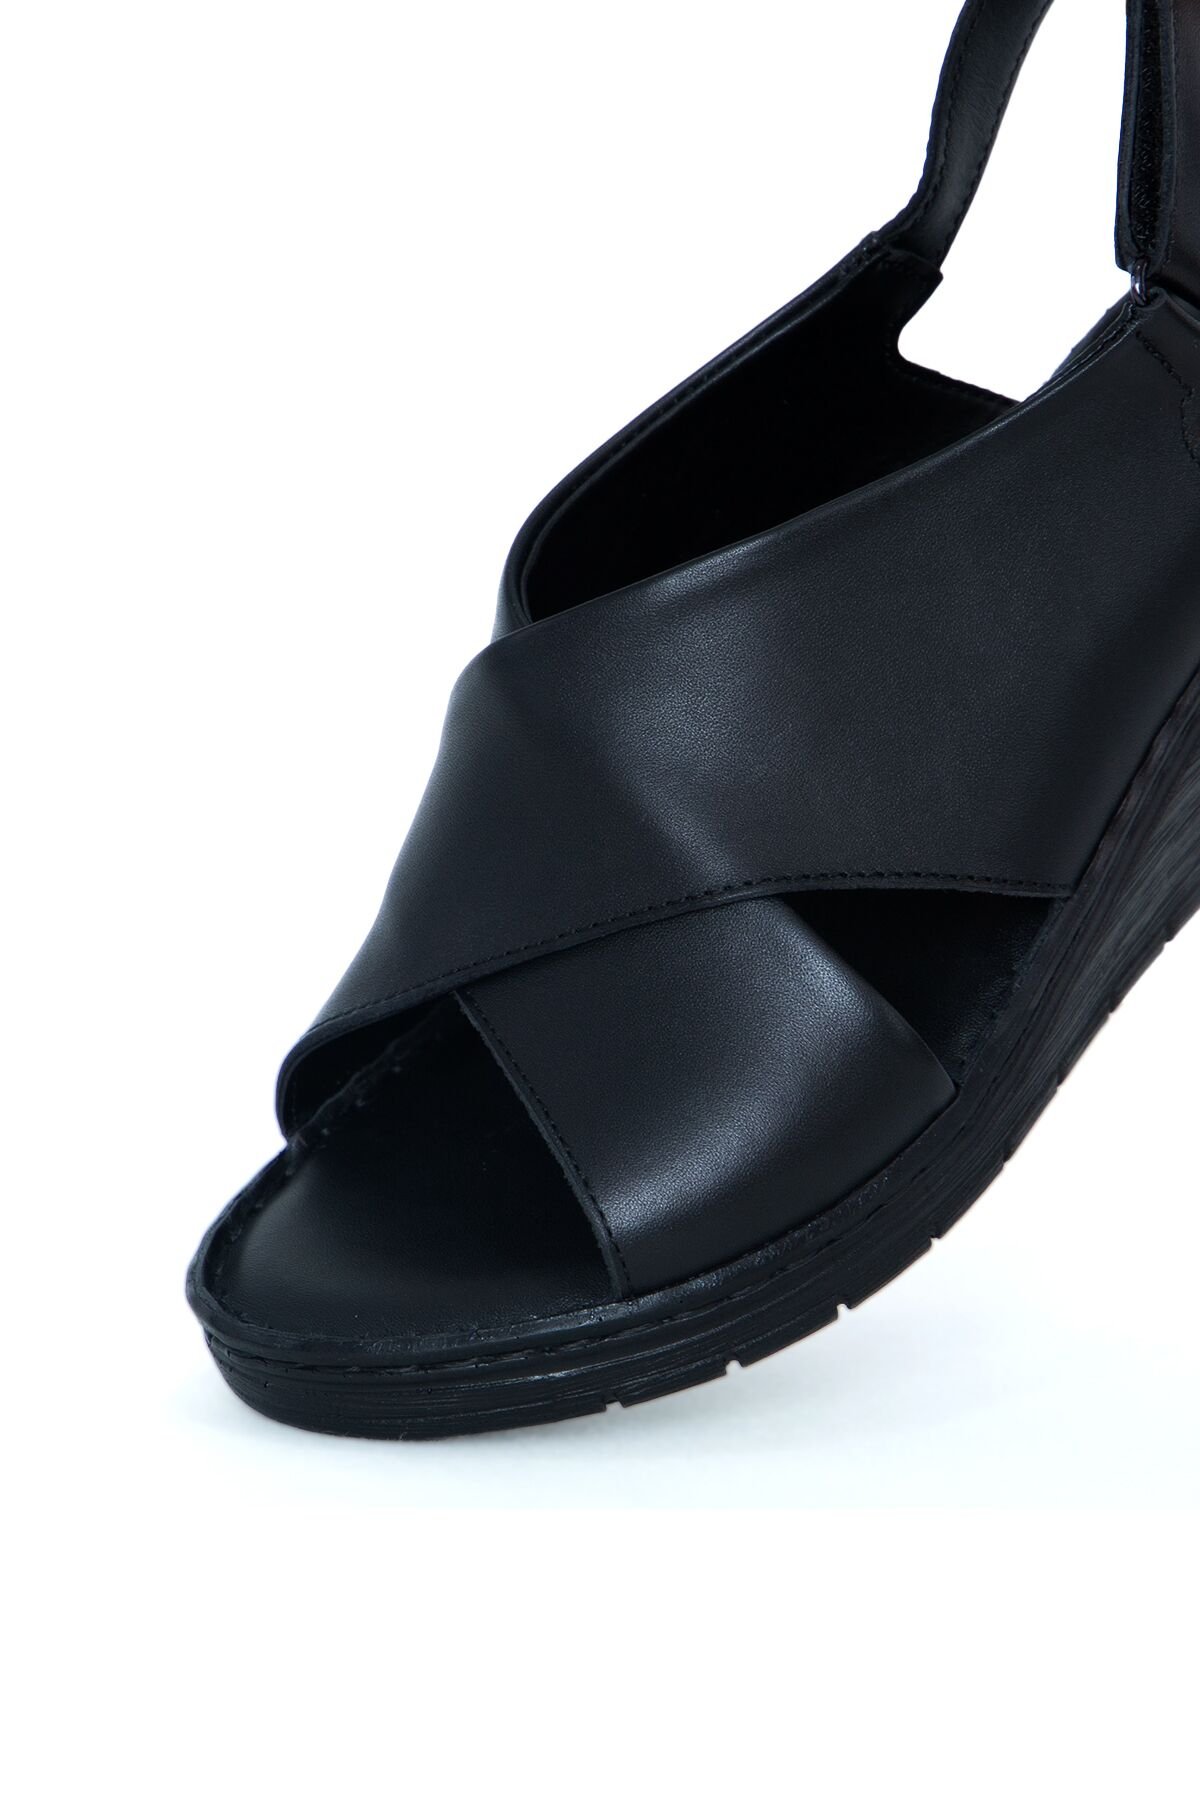 Kadın Ortopedik Sandalet PC-6907-Siyah - 3